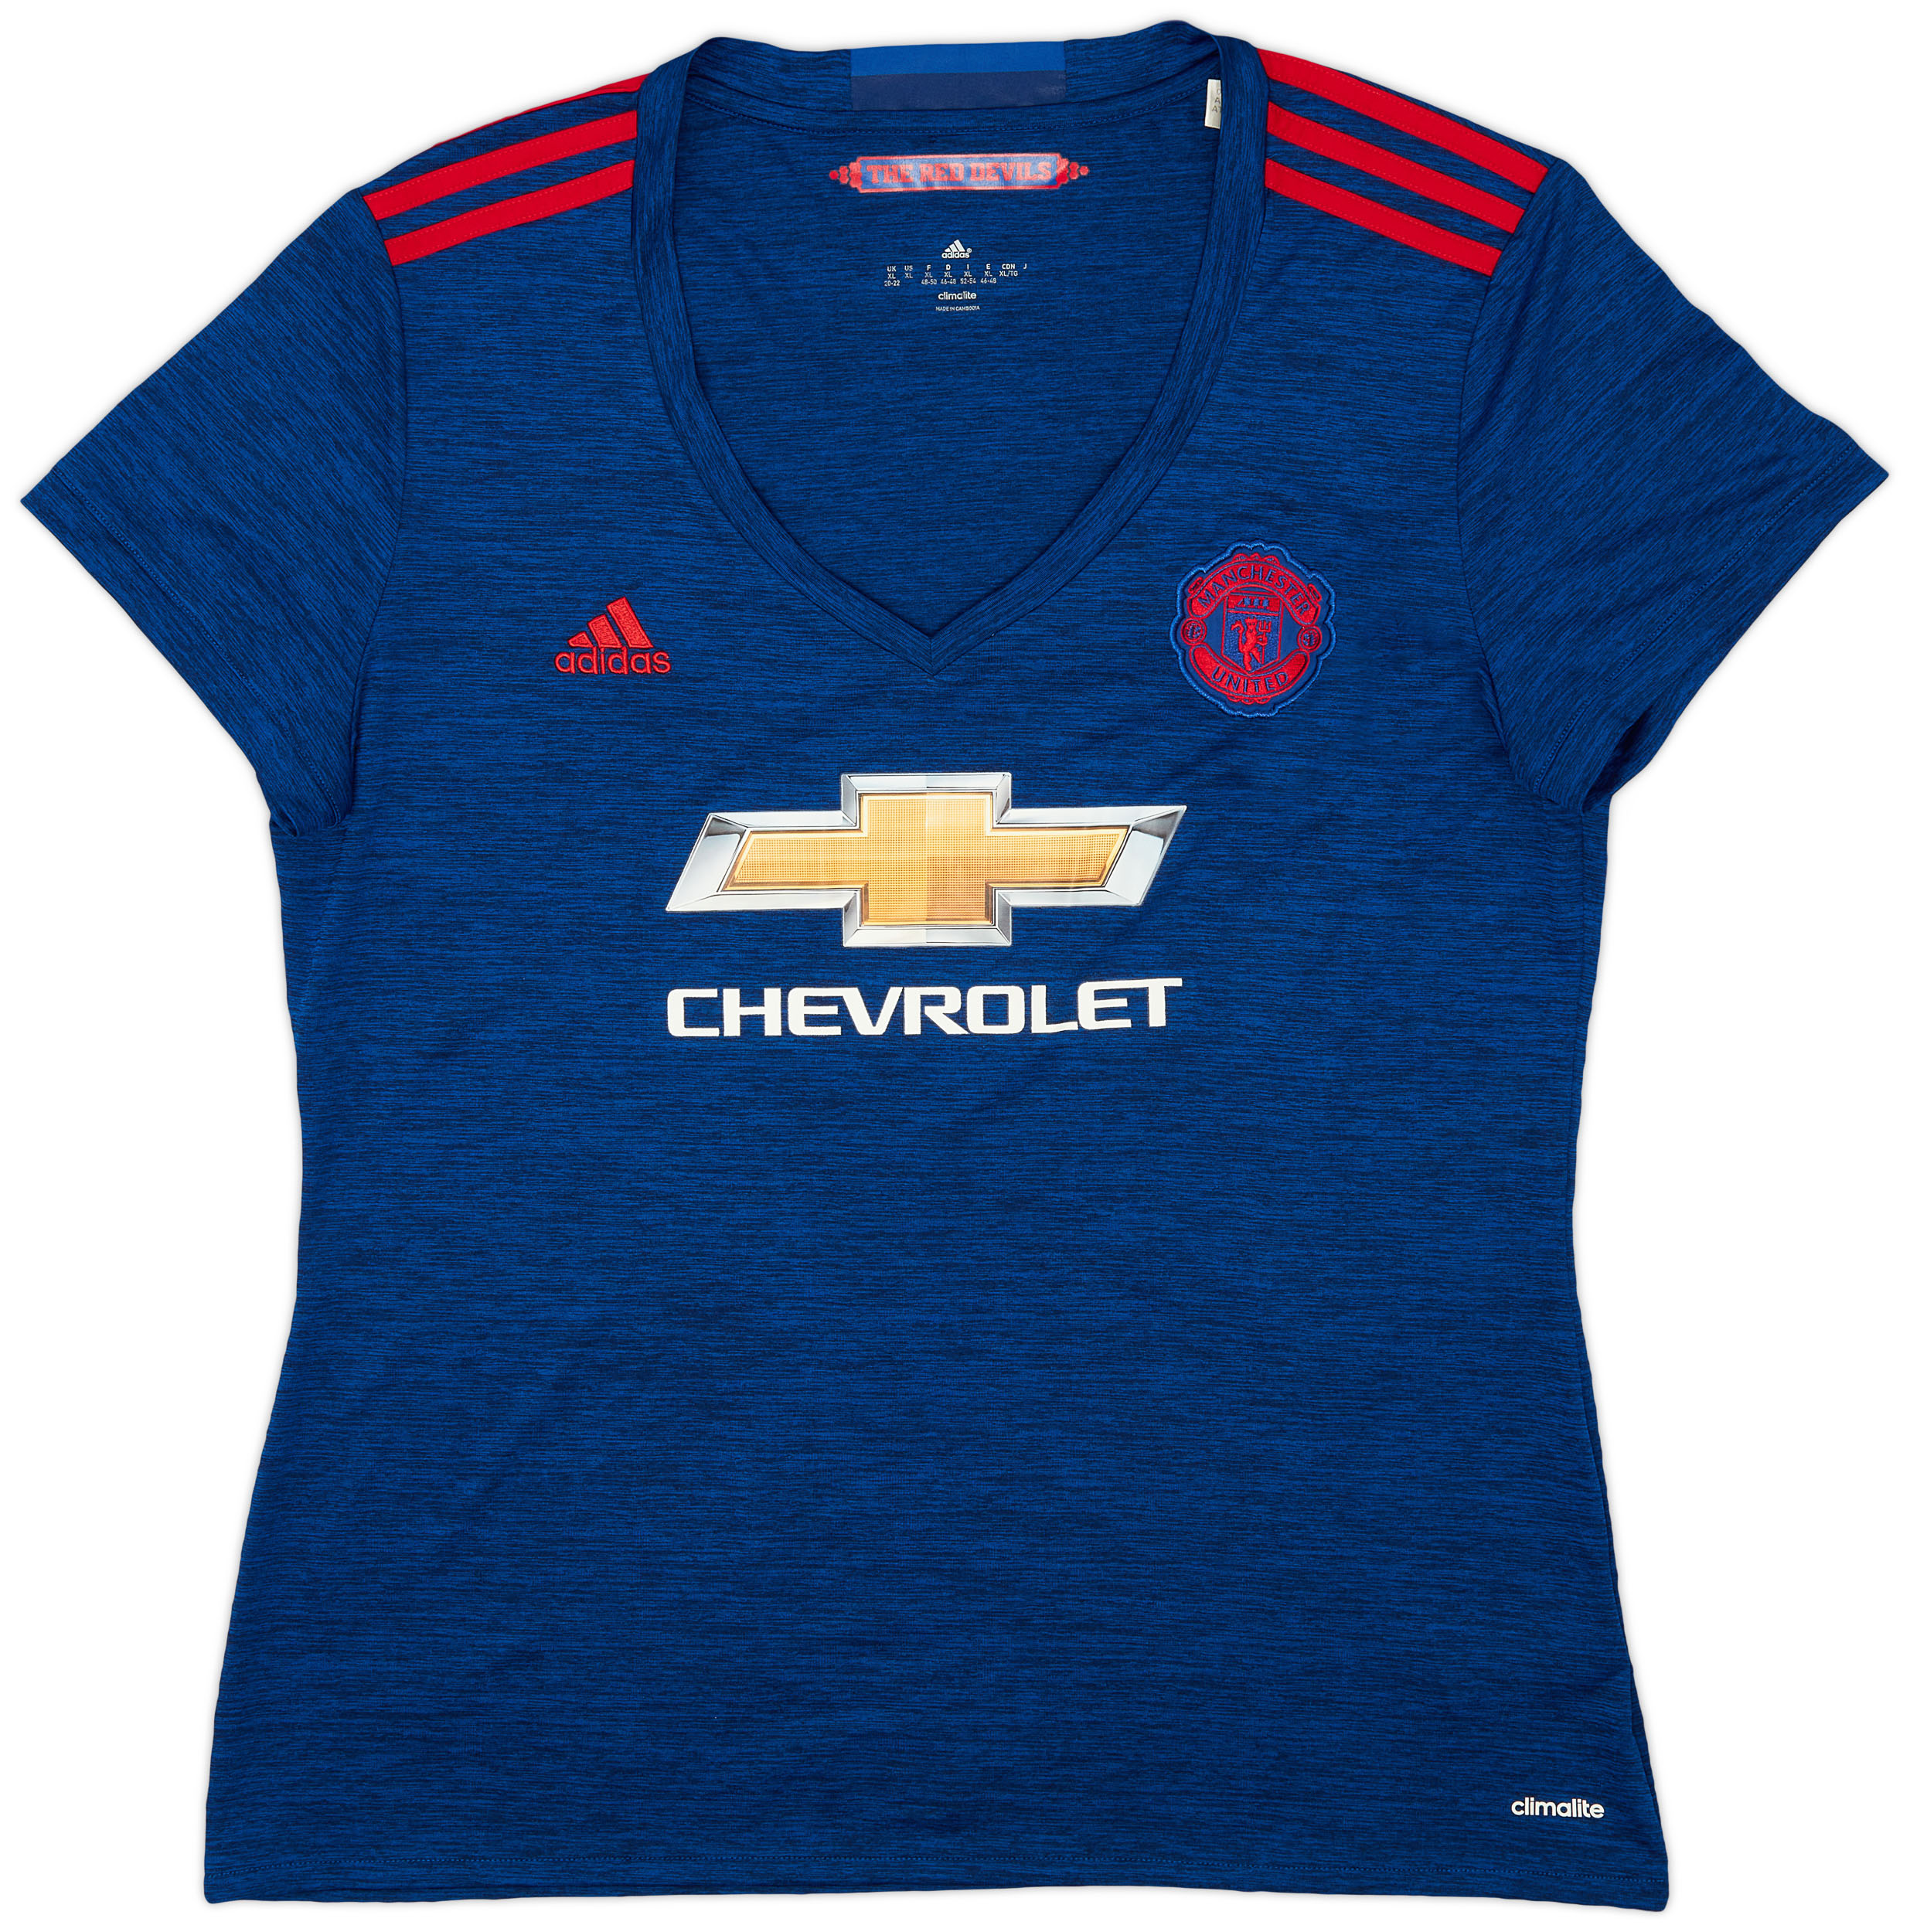 2016-17 Manchester United Away Shirt - 9/10 - (Women's )